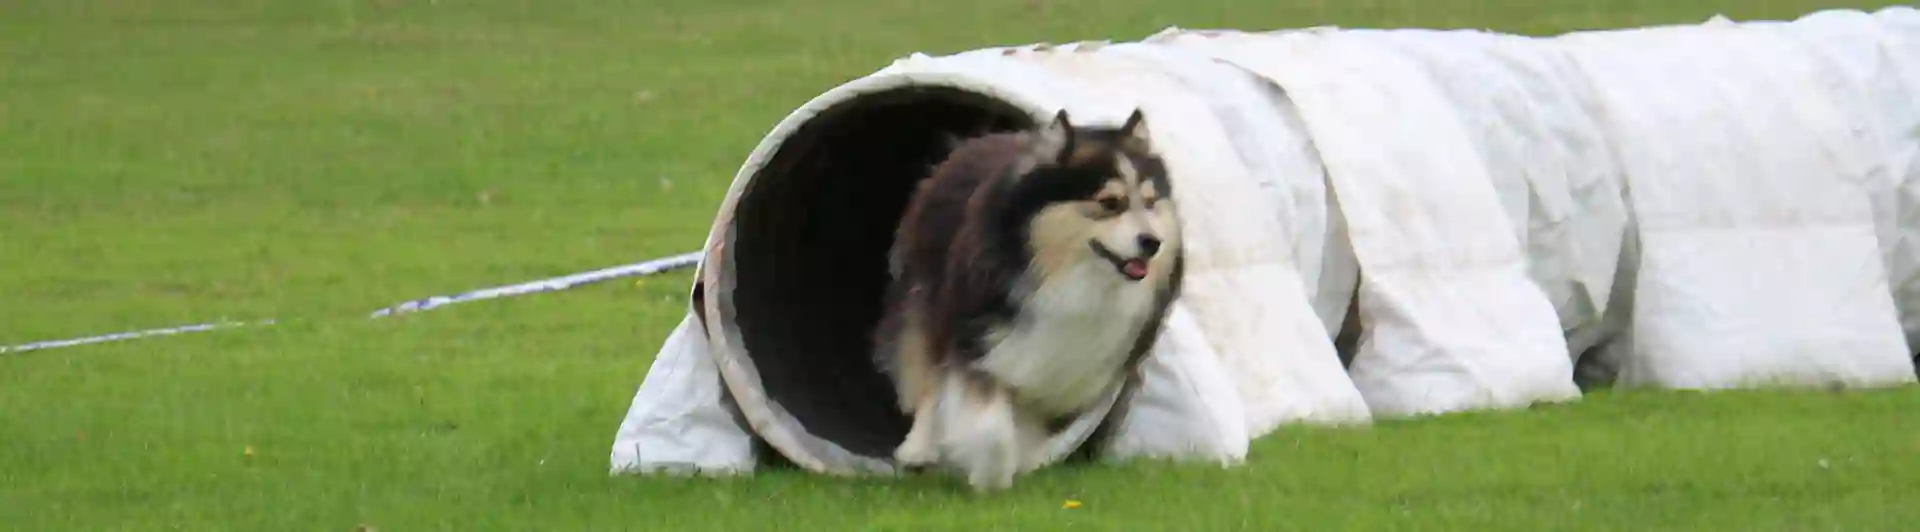 Hund på väg ut ur agilitytunnel vid tävling Trelleborgs Brukshundklubb